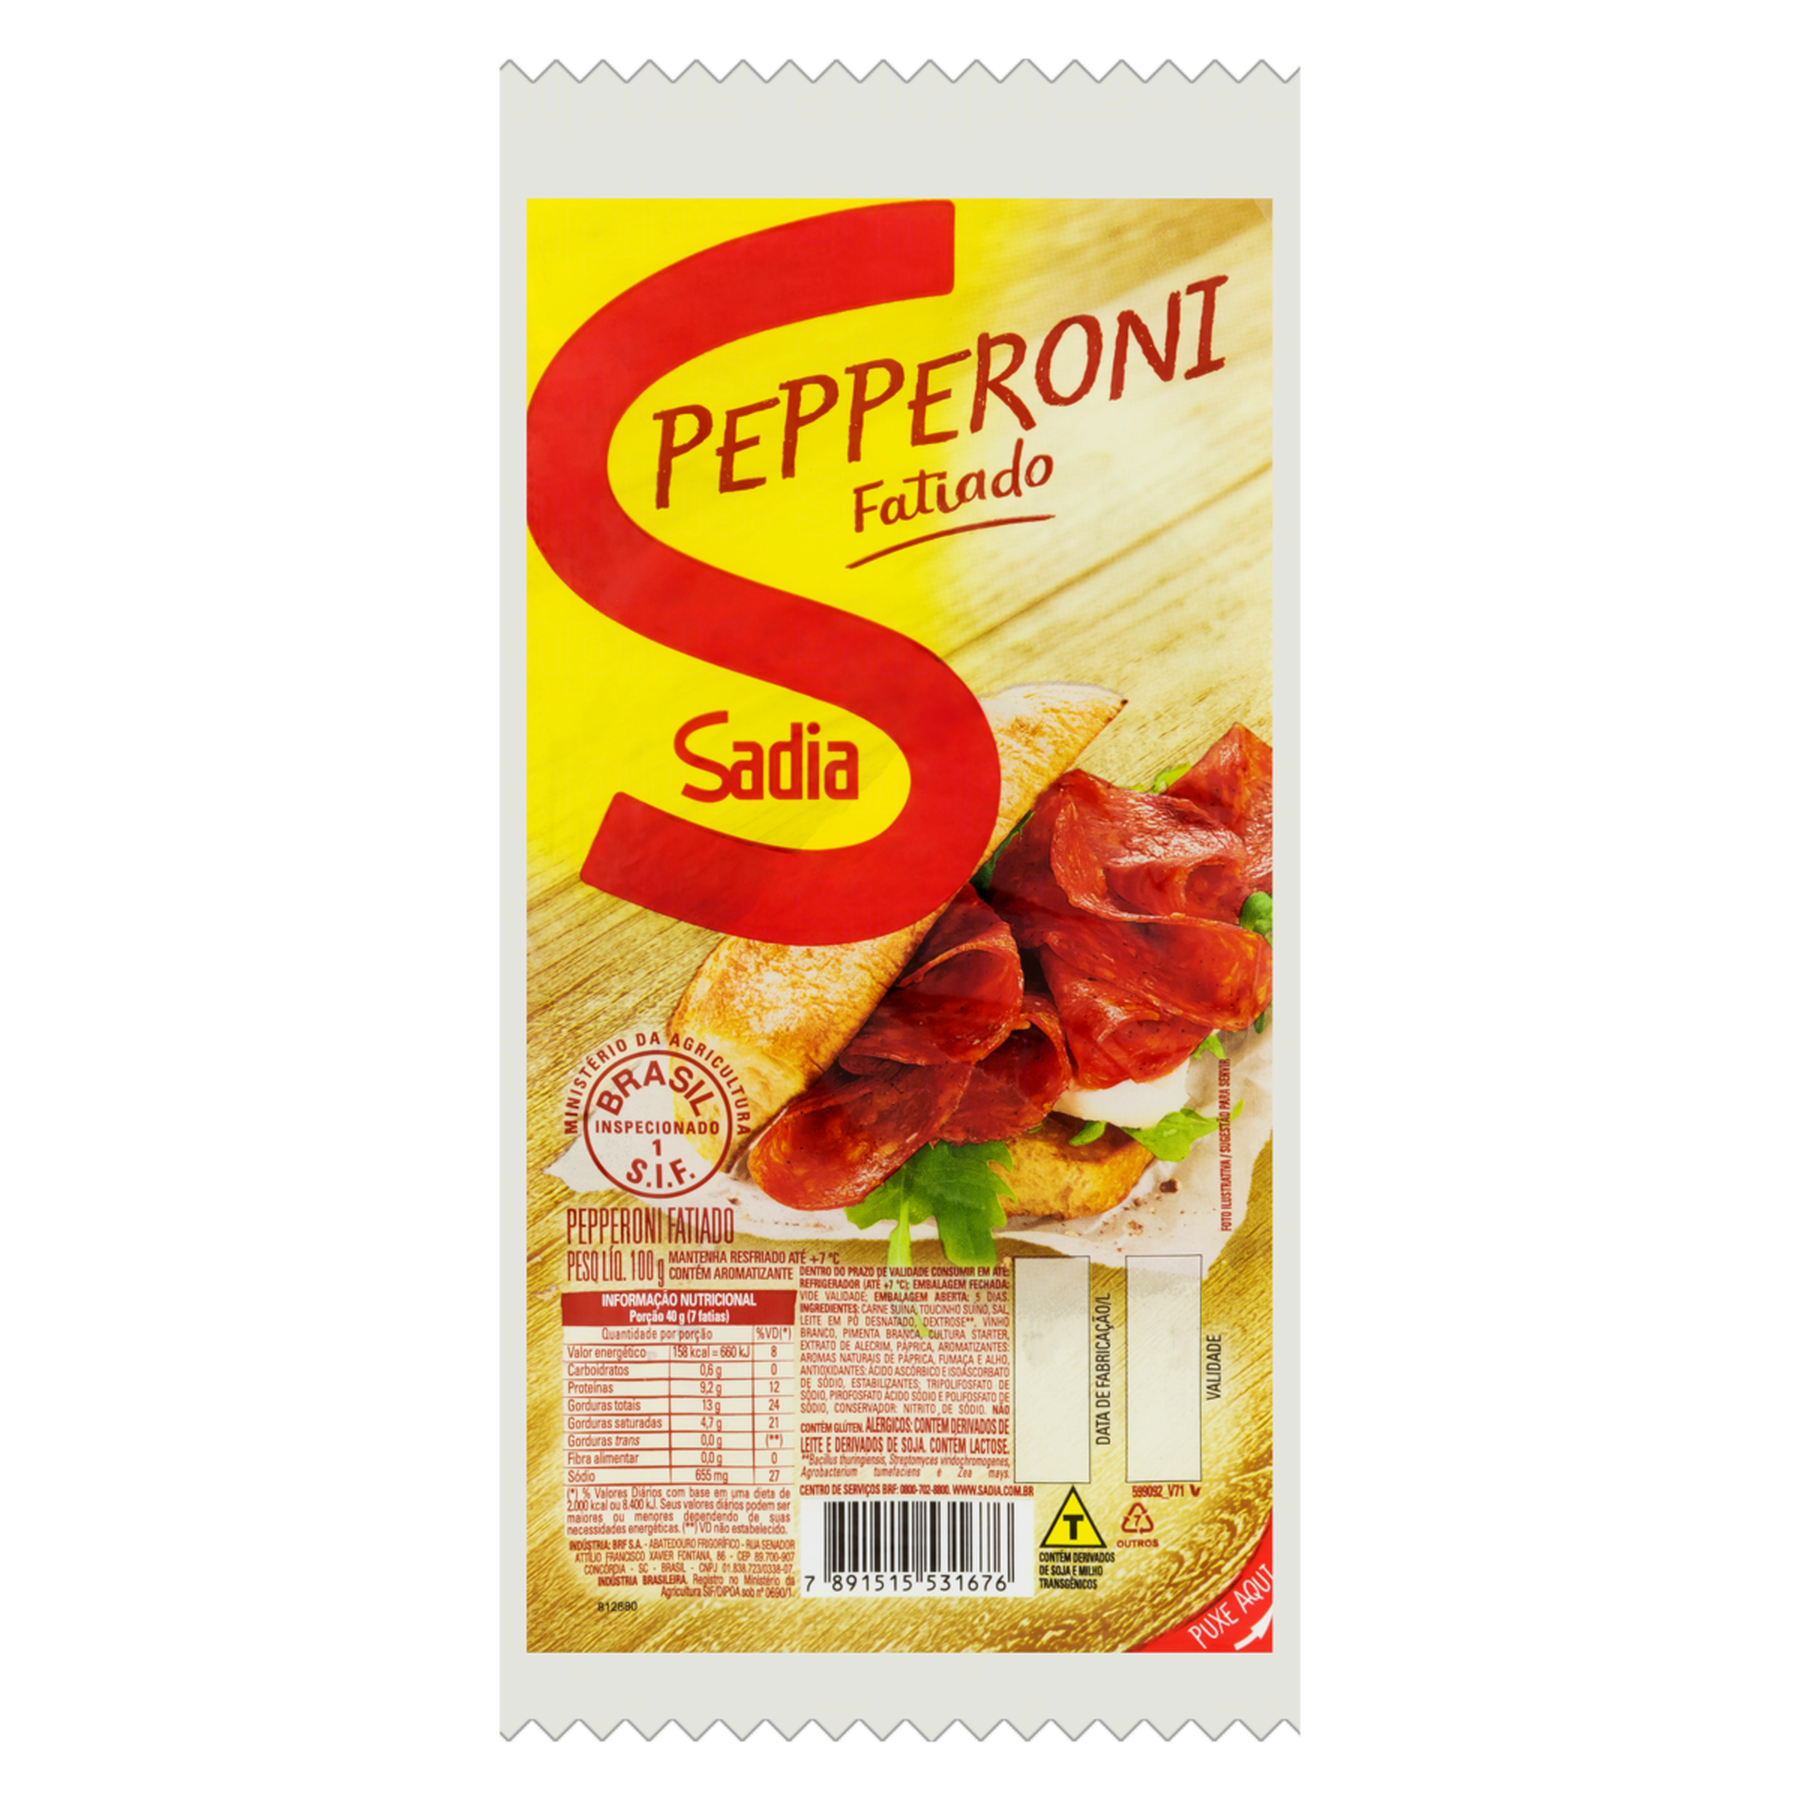 Salame Pepperoni Fatiado Sadia 100g